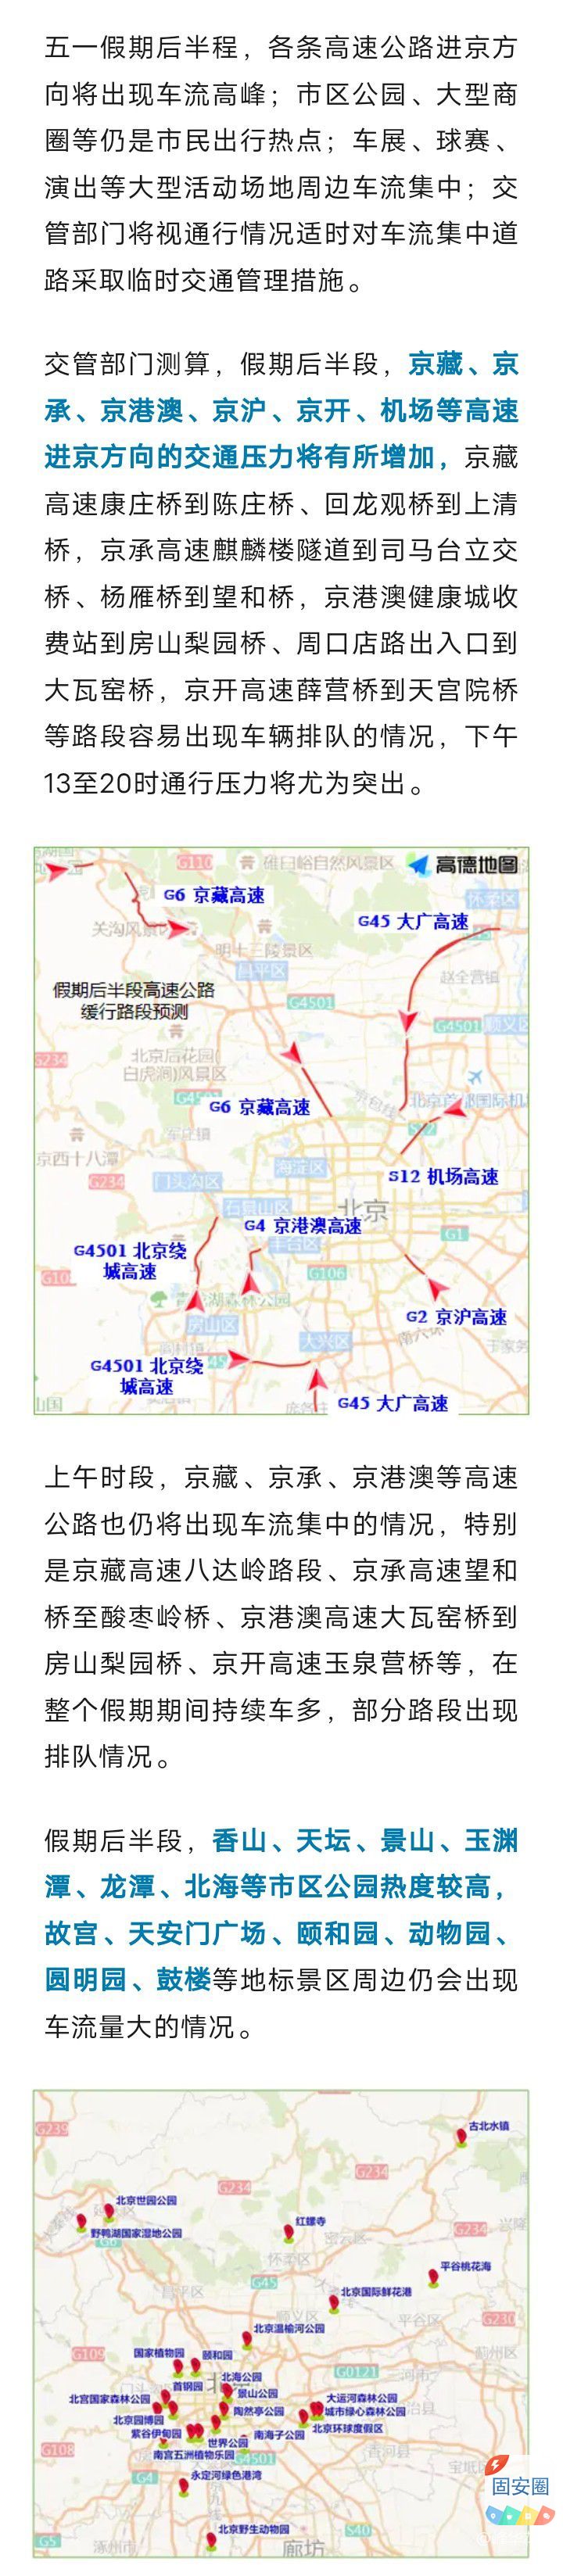 五一，后半程高速进京方向流量增大，城区公园商圈保持高热度2460 作者:峰华花园 帖子ID:306686 